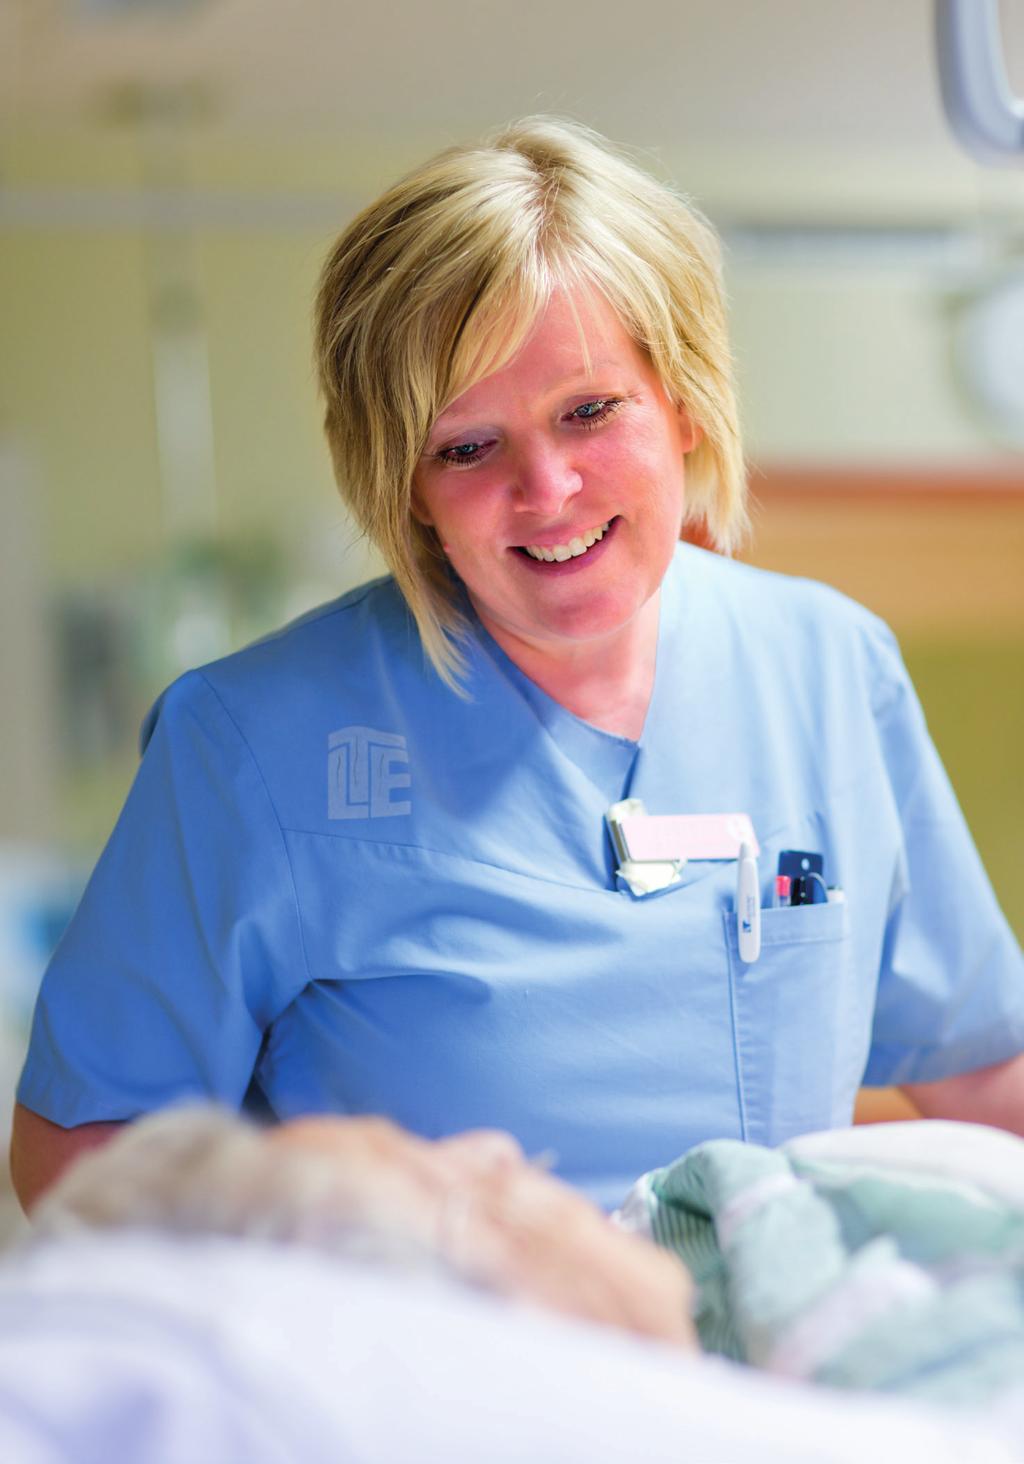 ICNs etiska kod för sjuksköterskor Sjuksköterskans fyra grundläggande ansvarsområden är att främja hälsa, förebygga sjukdom, återställa hälsa och lindra lidande. Behovet av omvårdnad är universellt.